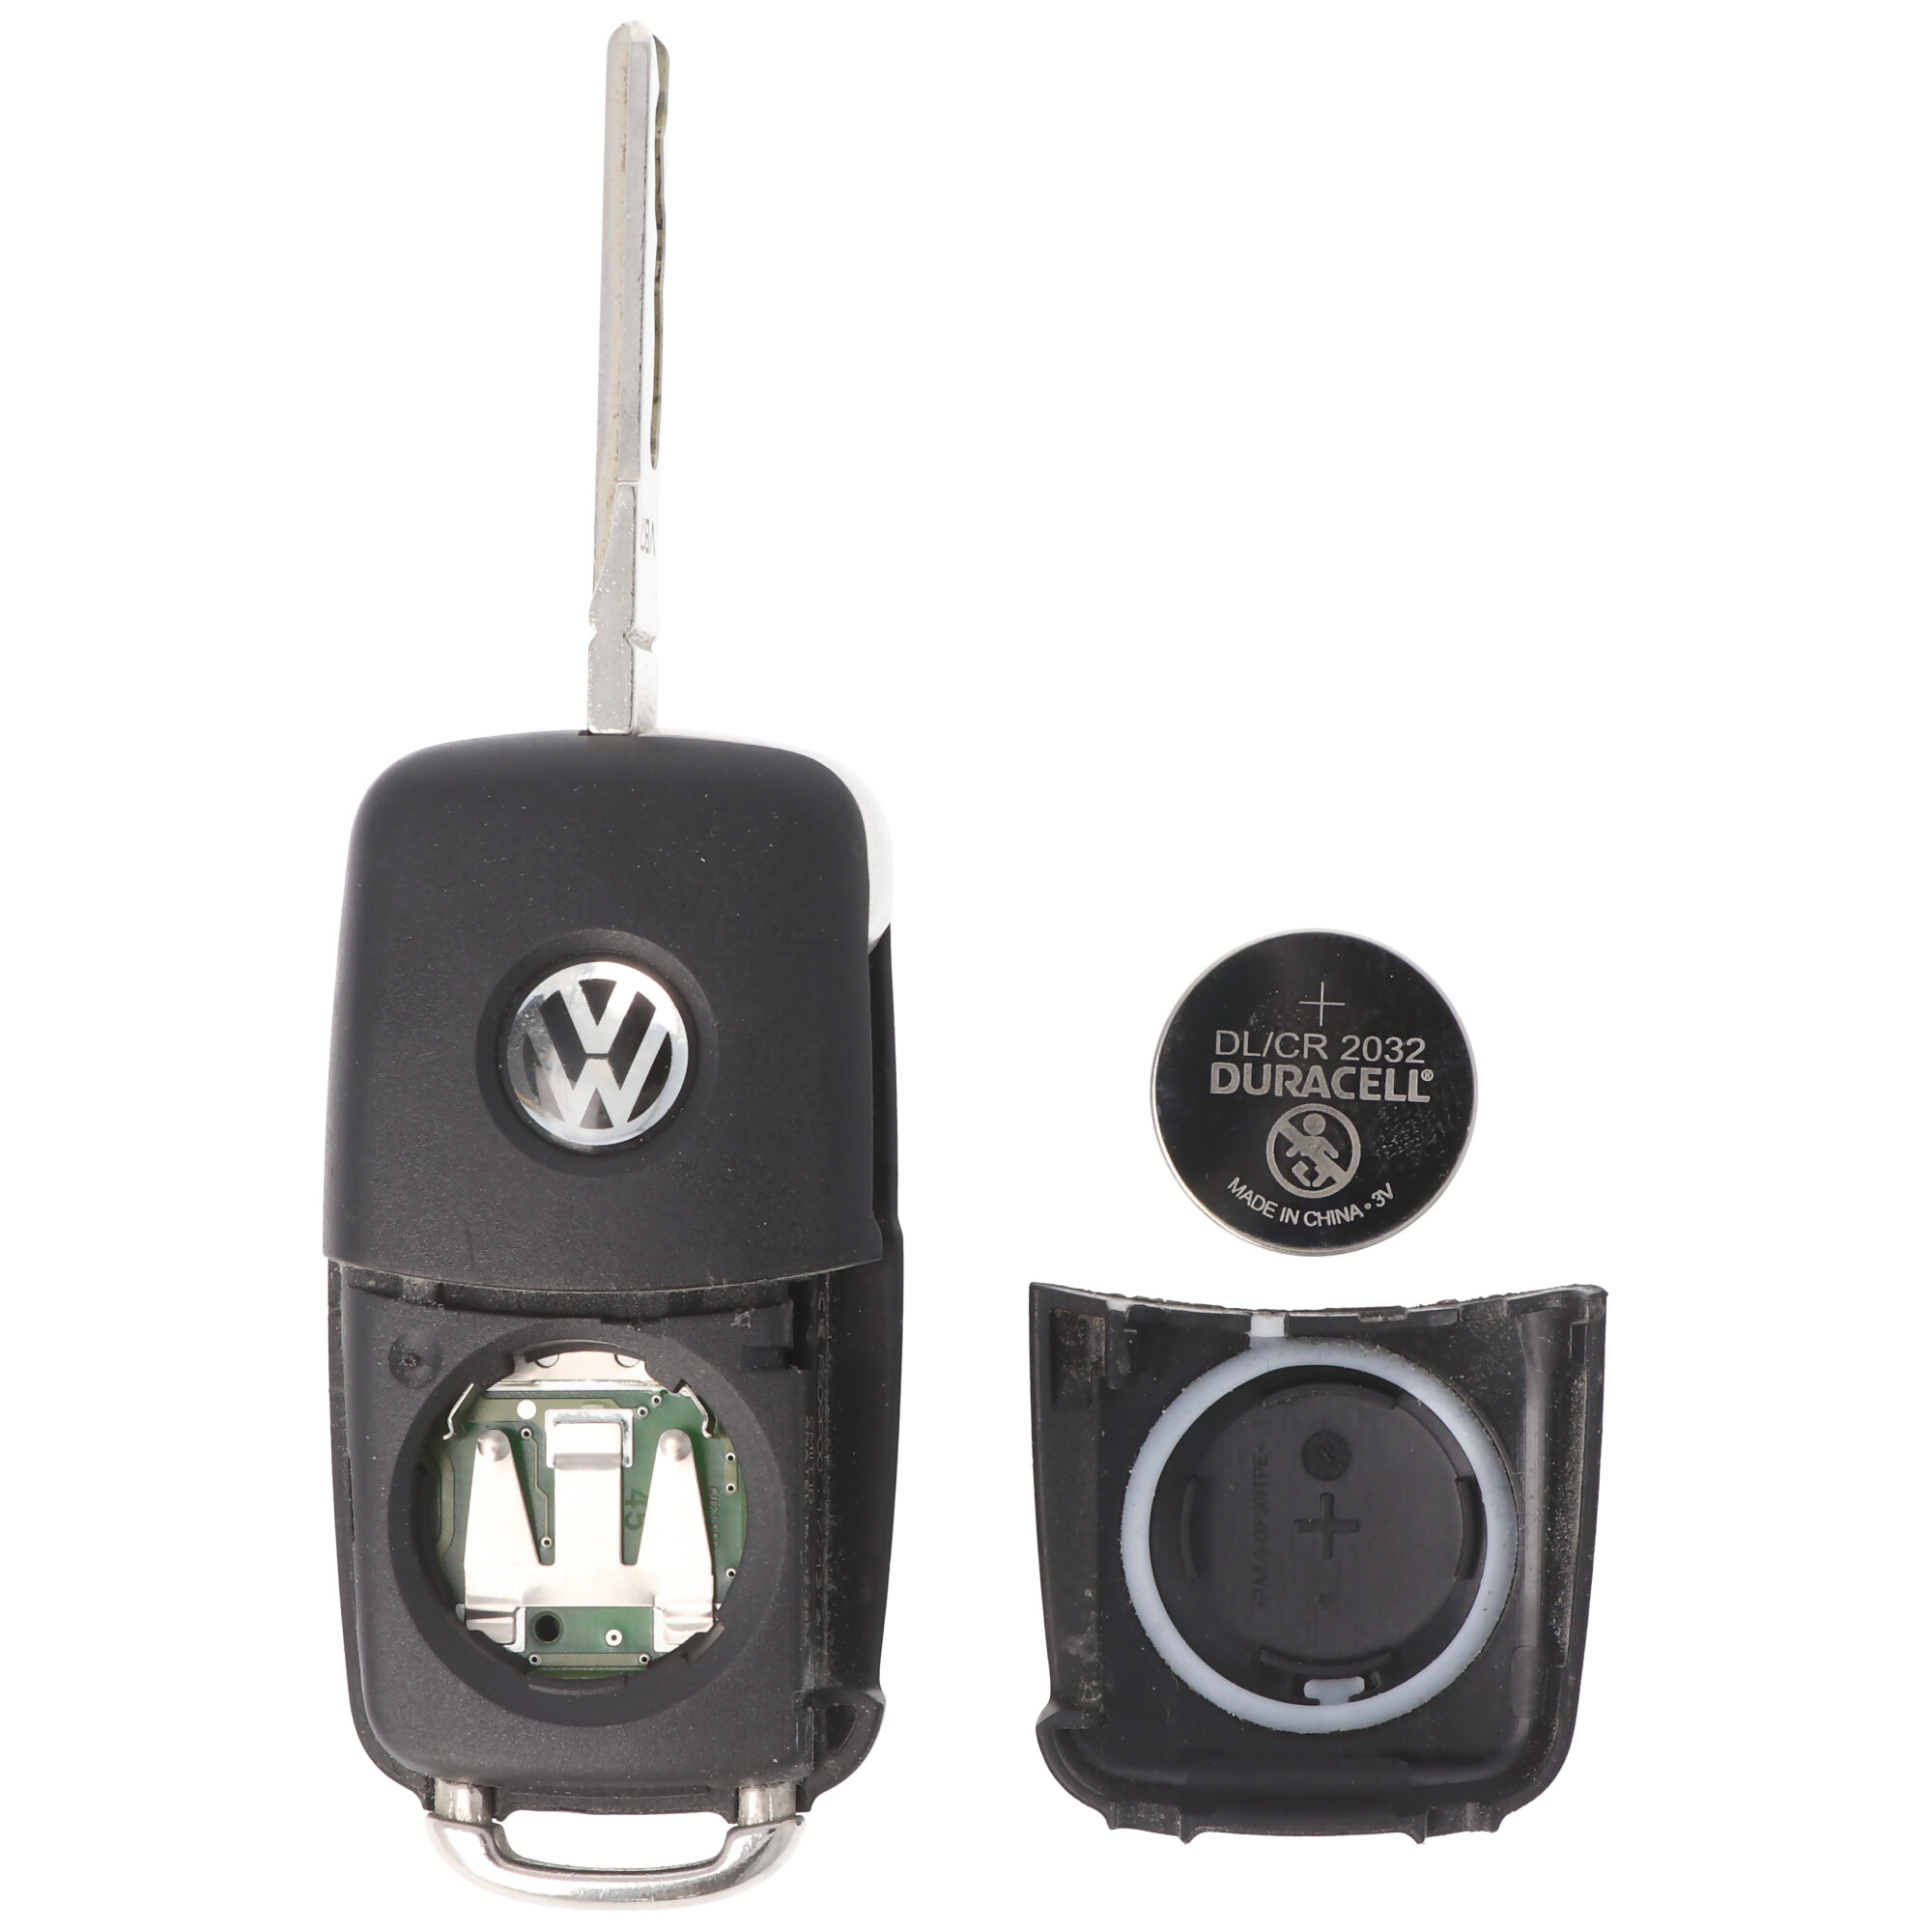 2 Stück Ersatzbatterien exakt passend nur für den VW Beetle Autoschlüssel mit der CR2032 Batterie